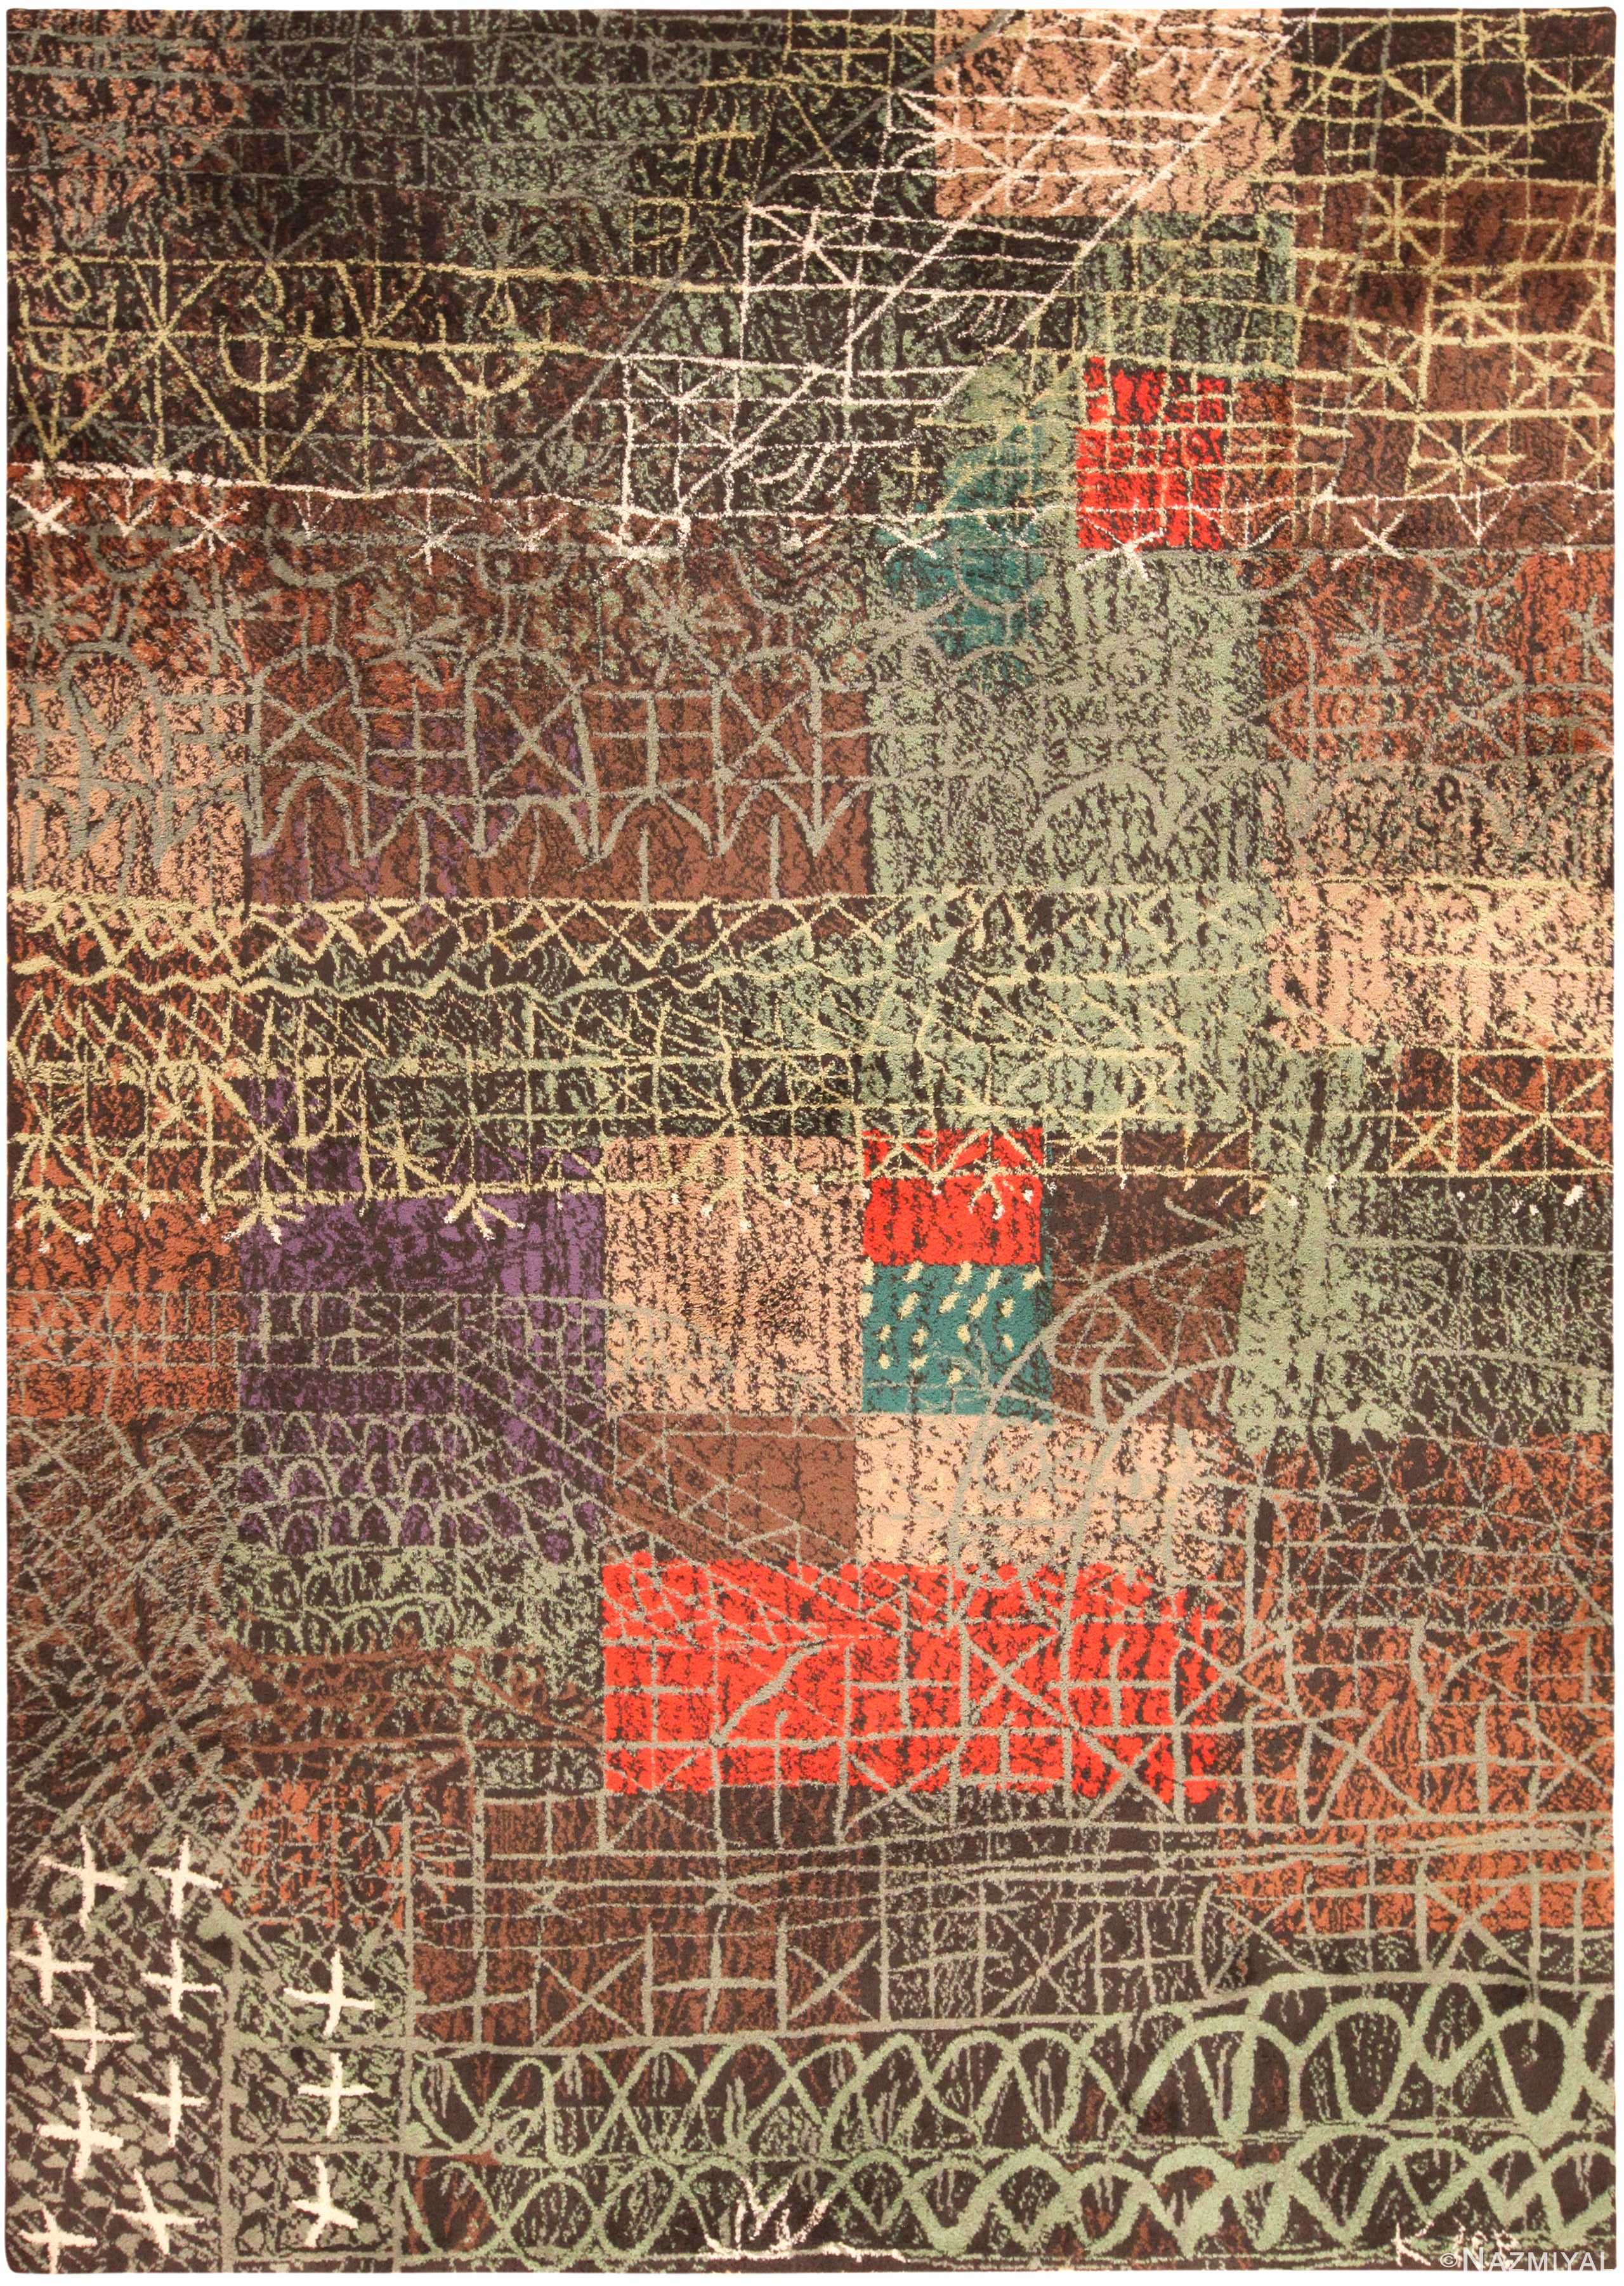 Vintage Paul Klee Ege Art Line Carpet Named "Structural 1" 71715 by Nazmiyal Antique Rugs